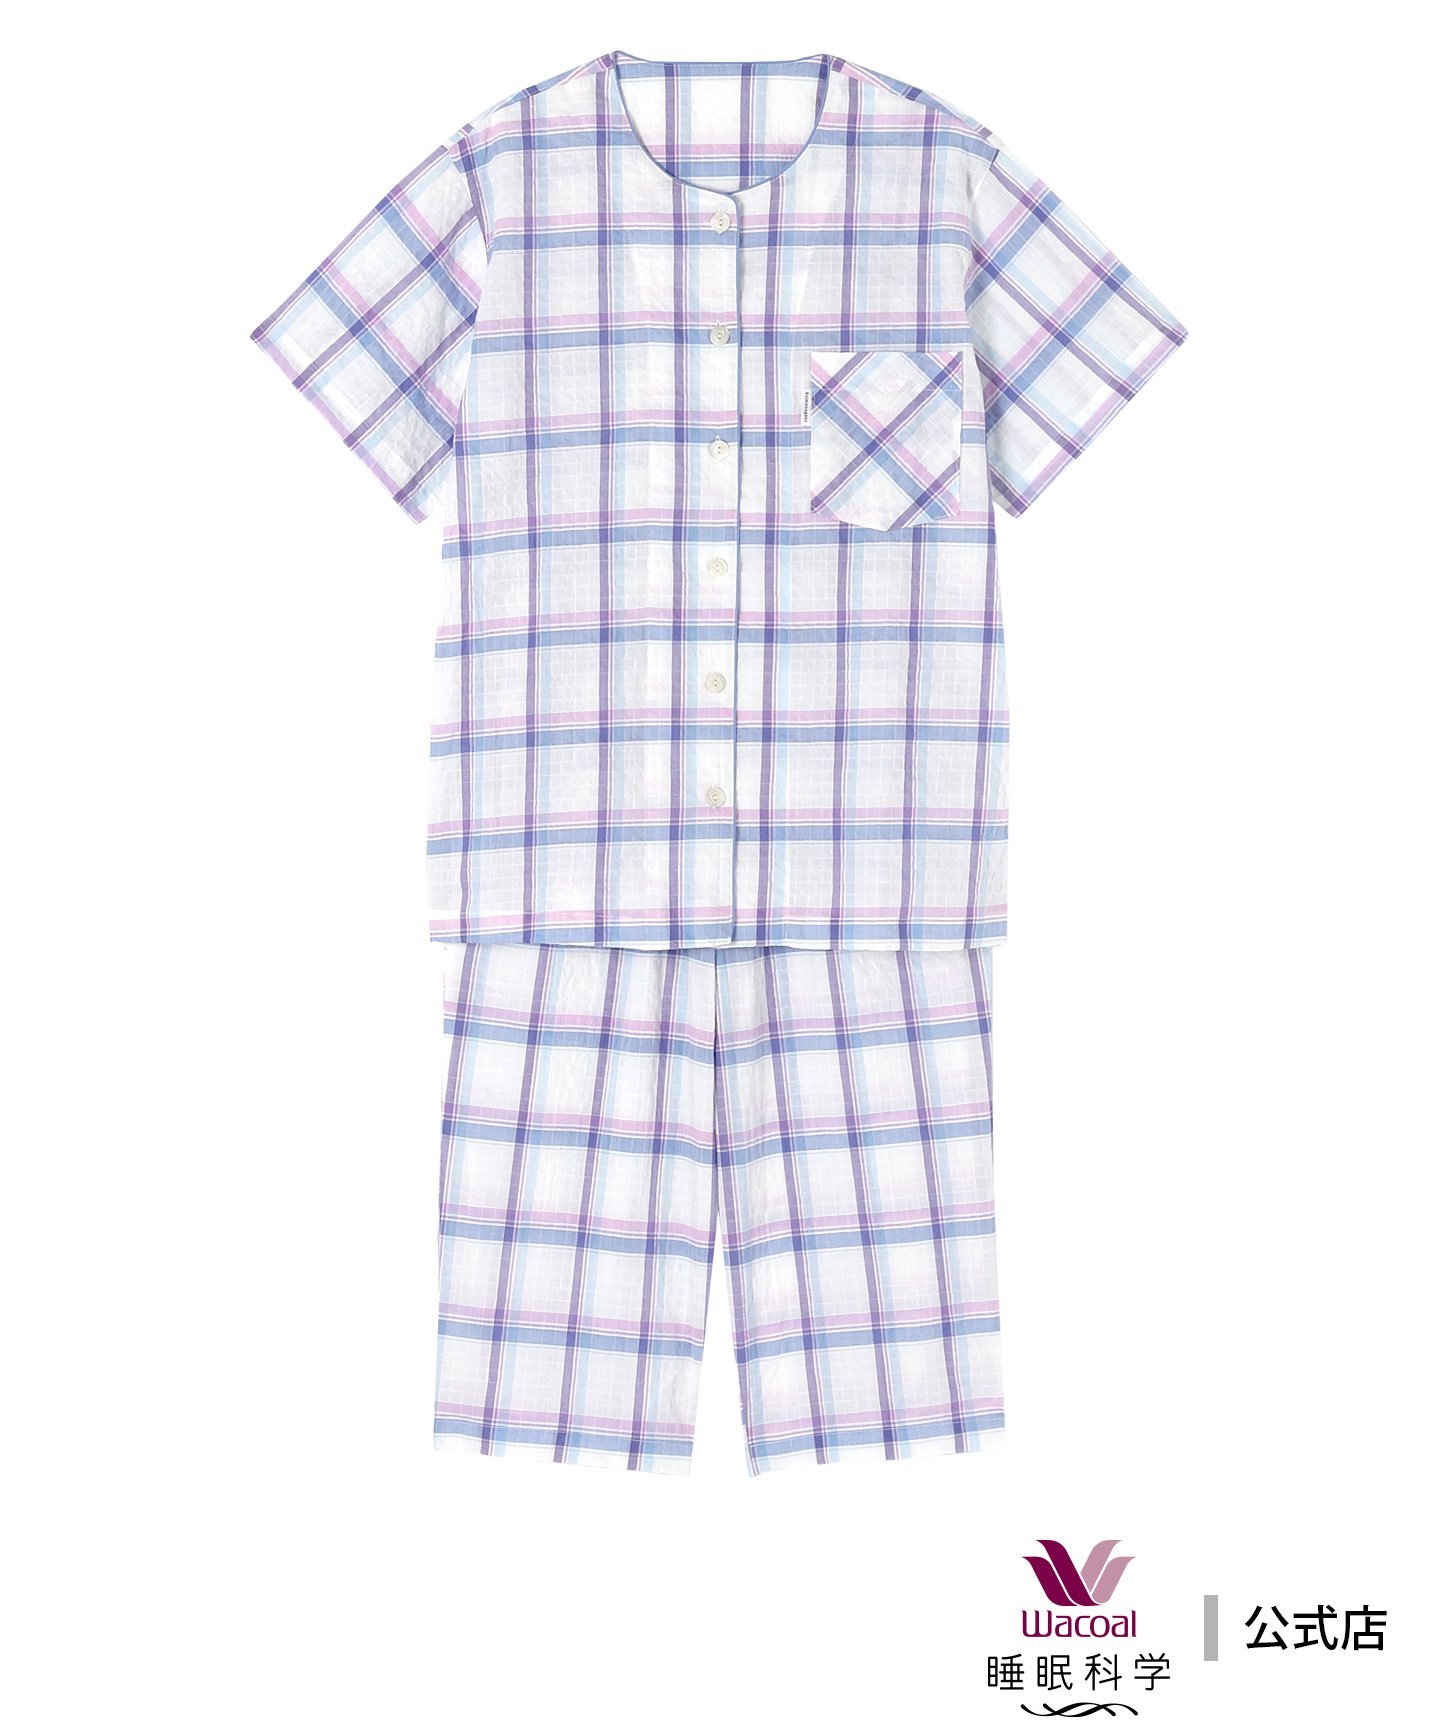 ワコール/睡眠科学 ワコール 睡眠科学 パジャマ 5分袖 半袖 7分丈 綿混(本体) 上下セット ワコール／スイミンカガク インナー・ルームウェア パジャマ ブルー ピンク